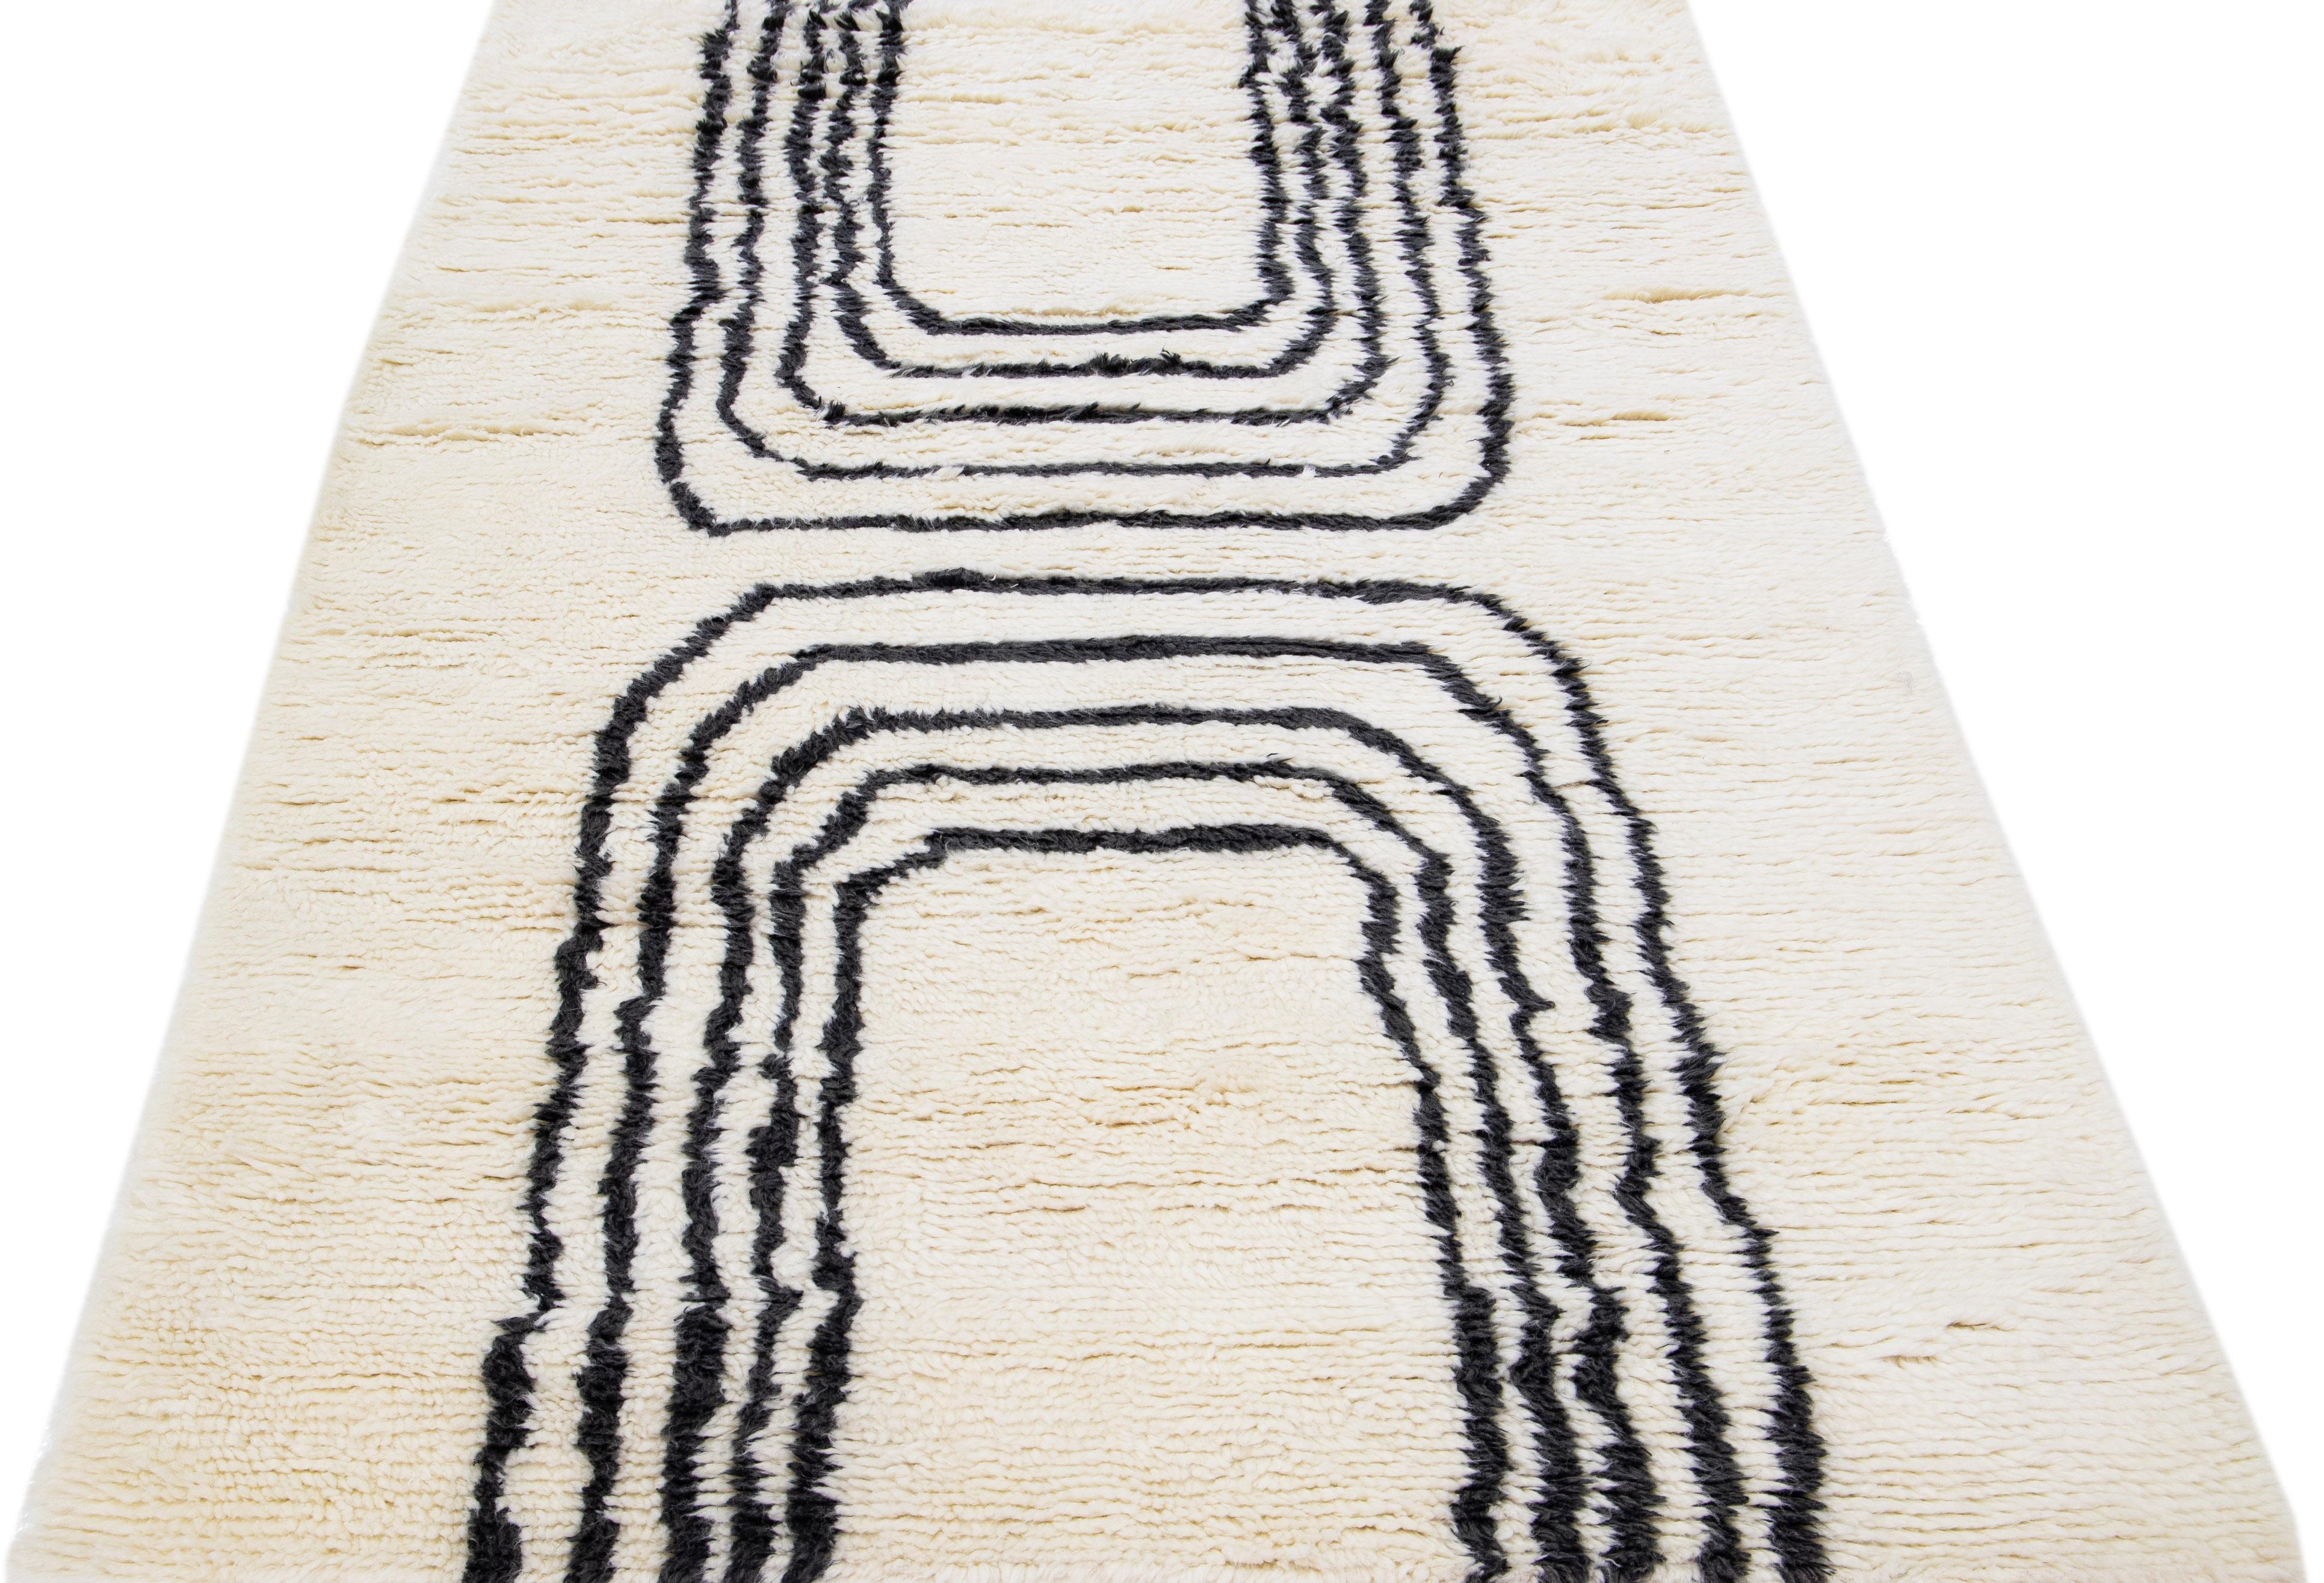 Magnifique tapis moderne de style marocain en laine nouée à la main avec un champ ivoire. Ce tapis fait partie de la collection Safi d'Apadana et présente un design minimaliste dans un coloris gris anthracite.

Ce tapis mesure : 5' x 8'.

Nos tapis